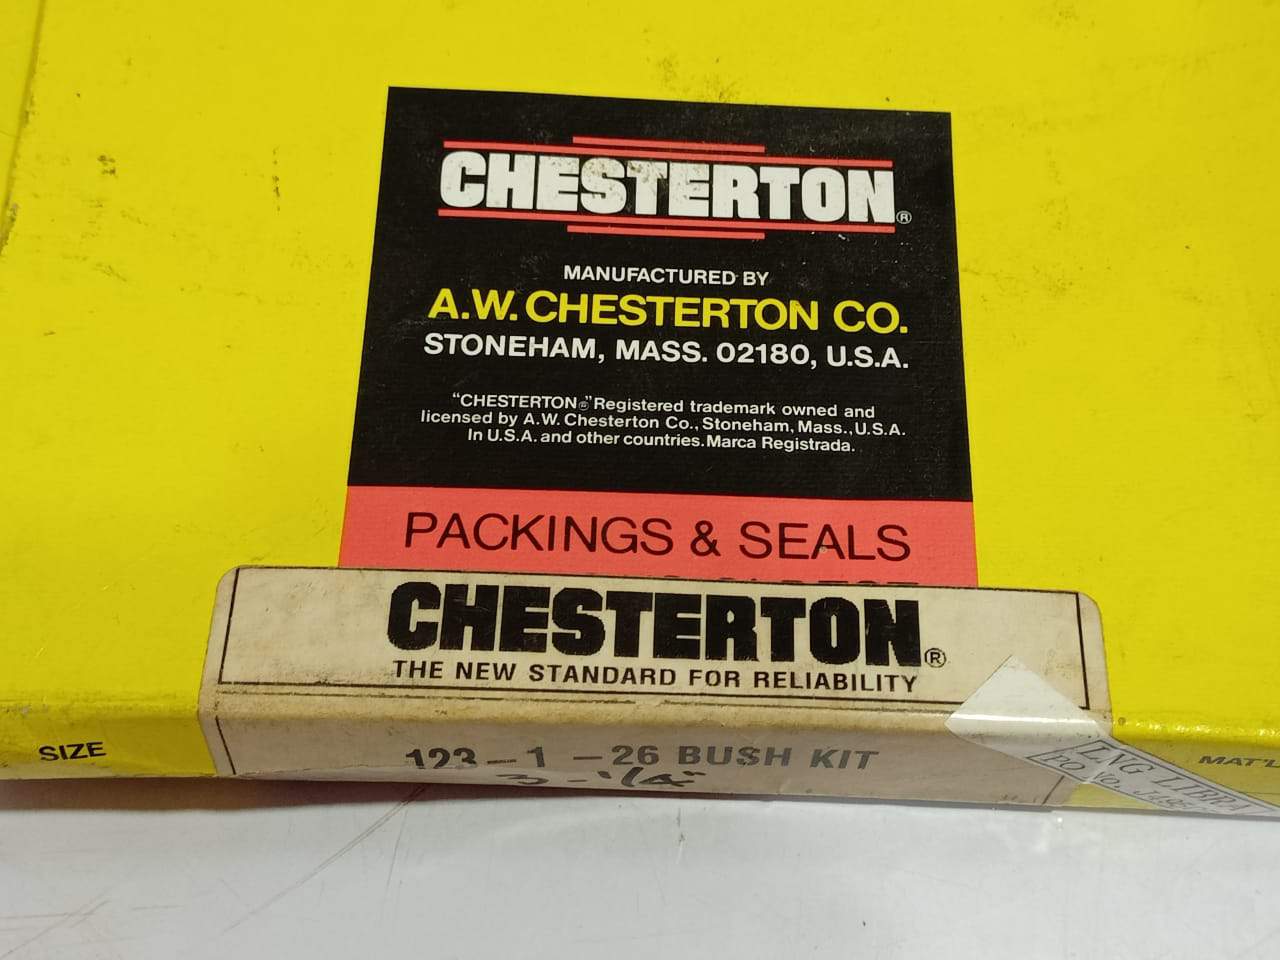 Chesterton 123-1-26 Bush Kit